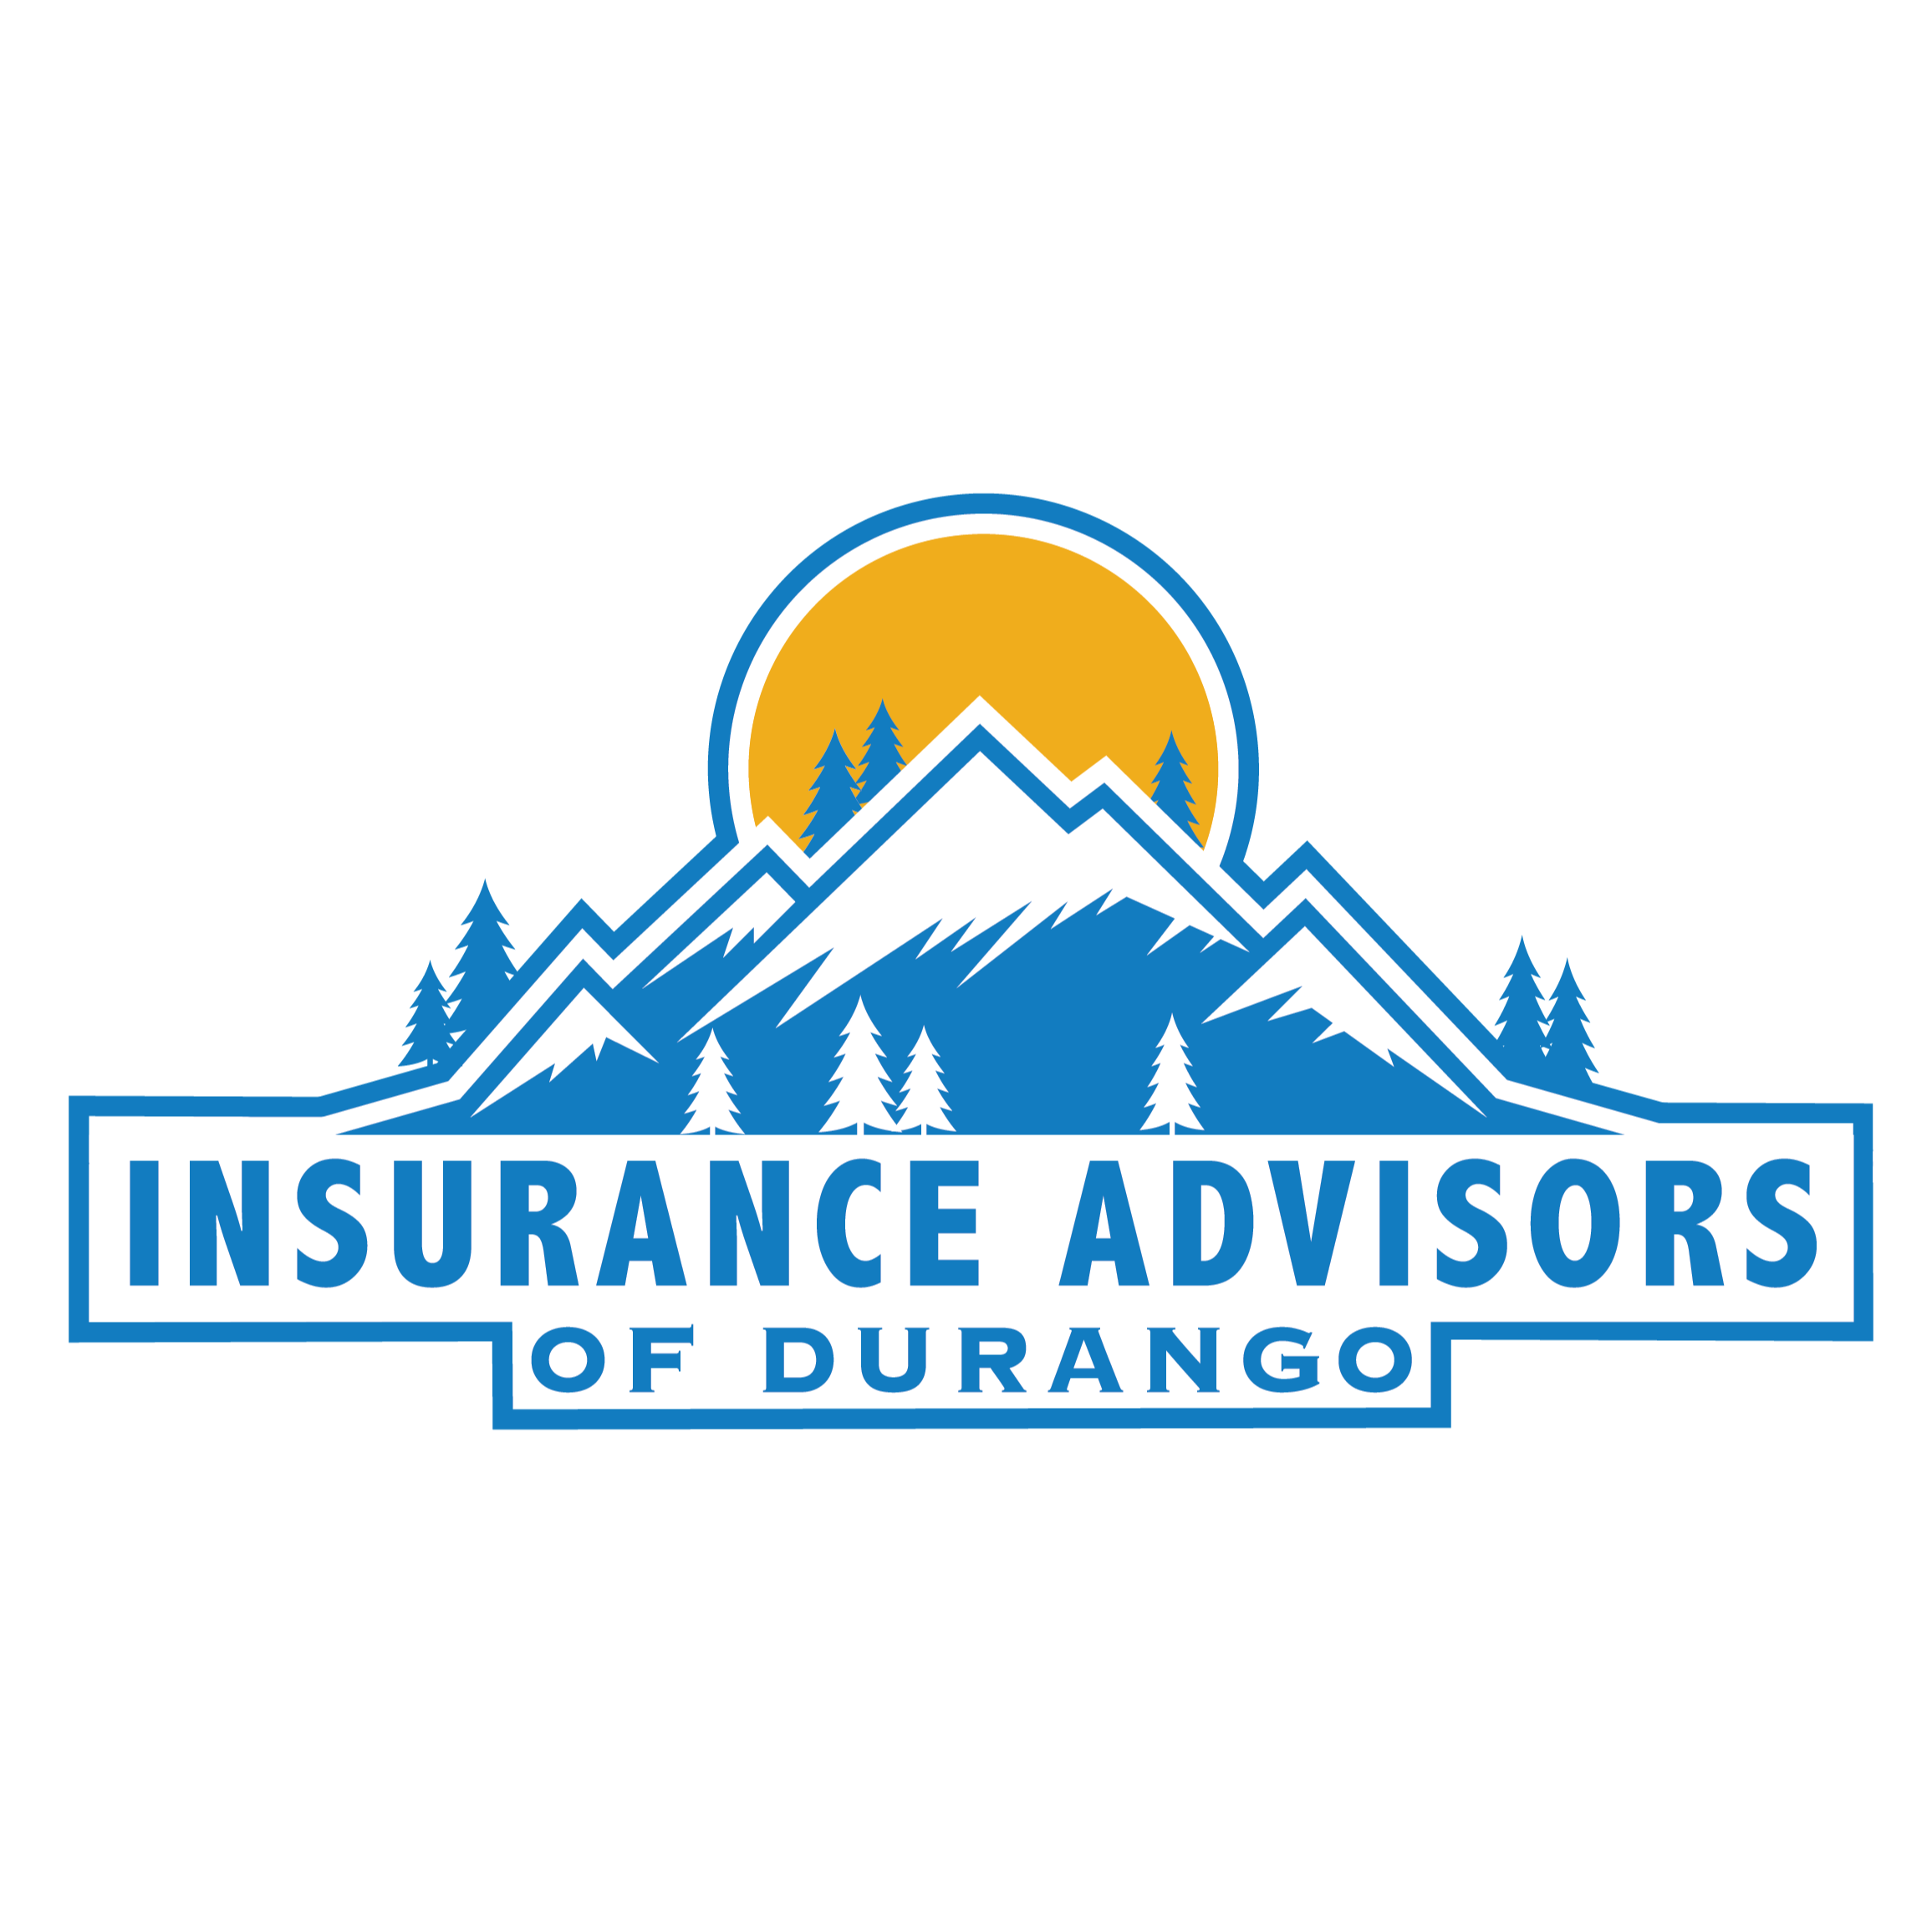 Insurance Advisors of durango